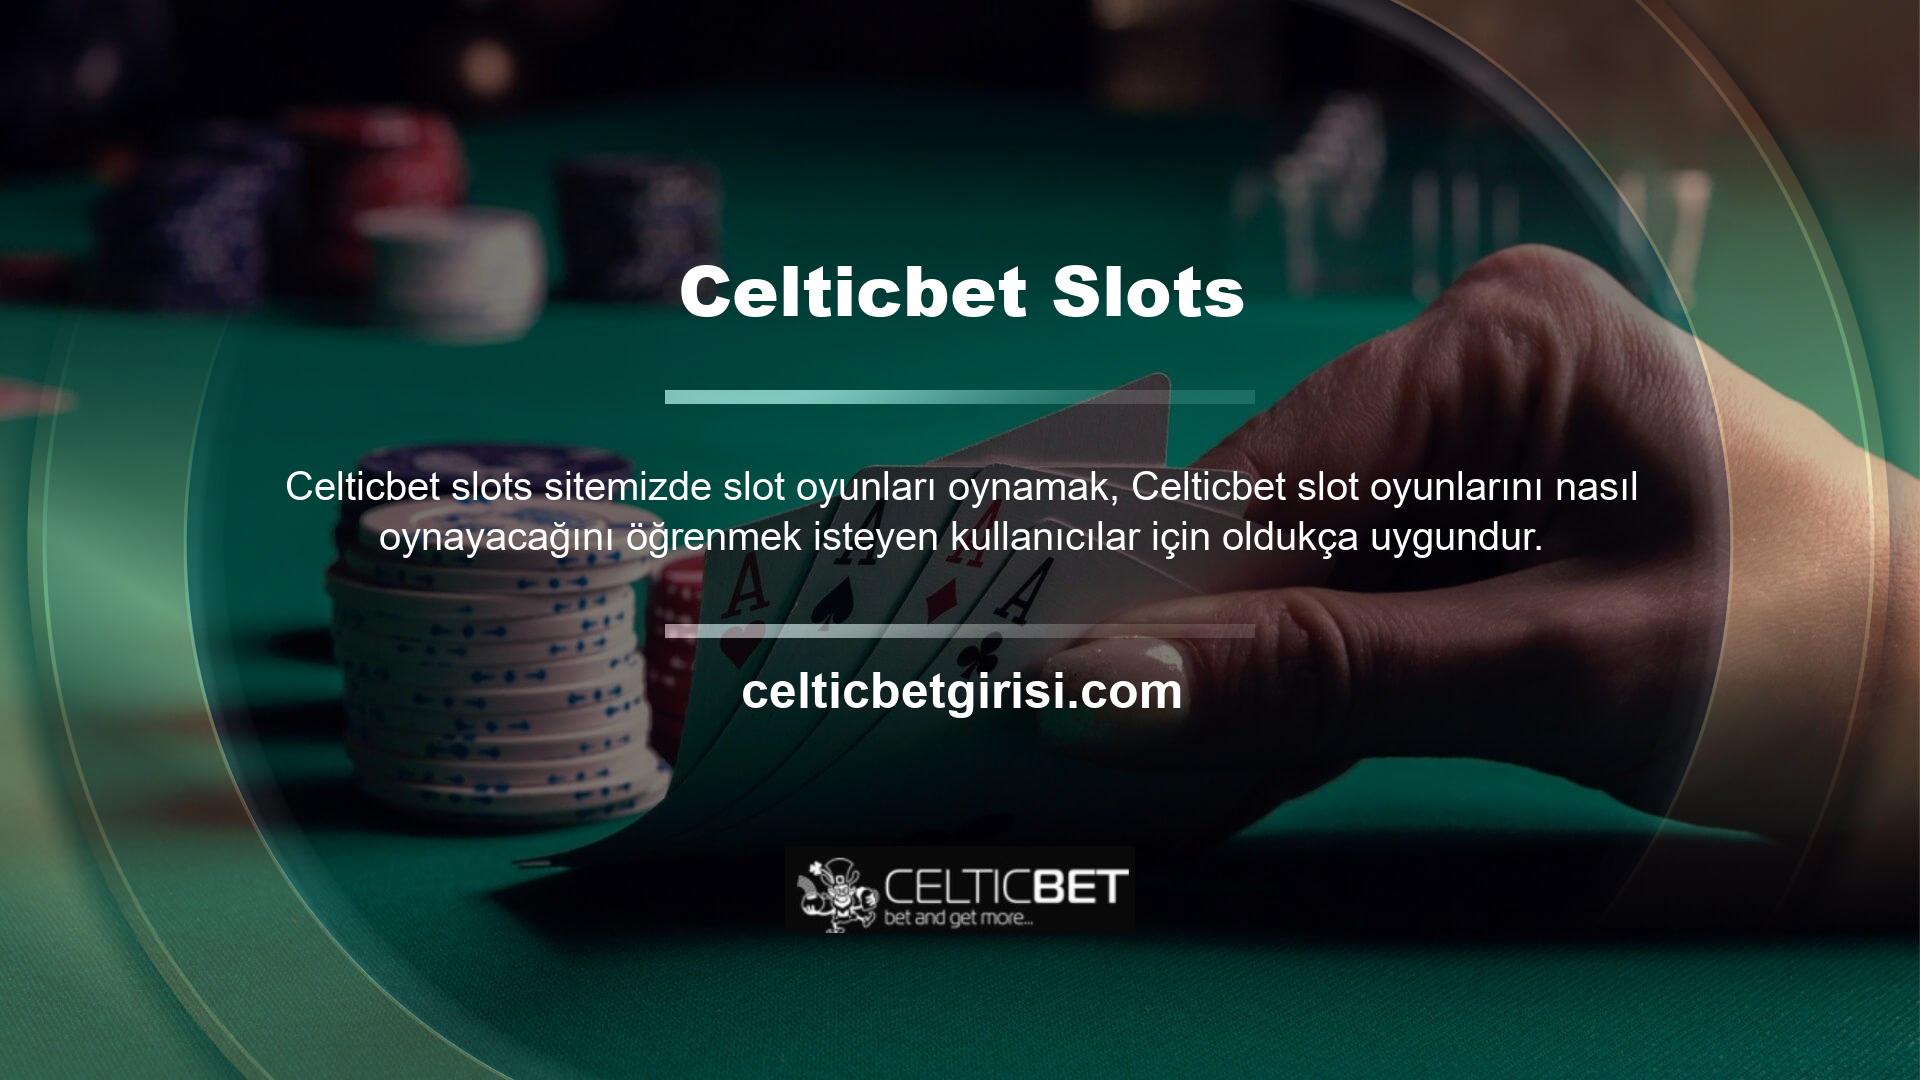 Yerleşik casinolardaki slot makinelerinde olduğu gibi, bu sitedeki slot makinelerinin oyun kuralları da benzer sembol kombinasyonlarına dayanmaktadır